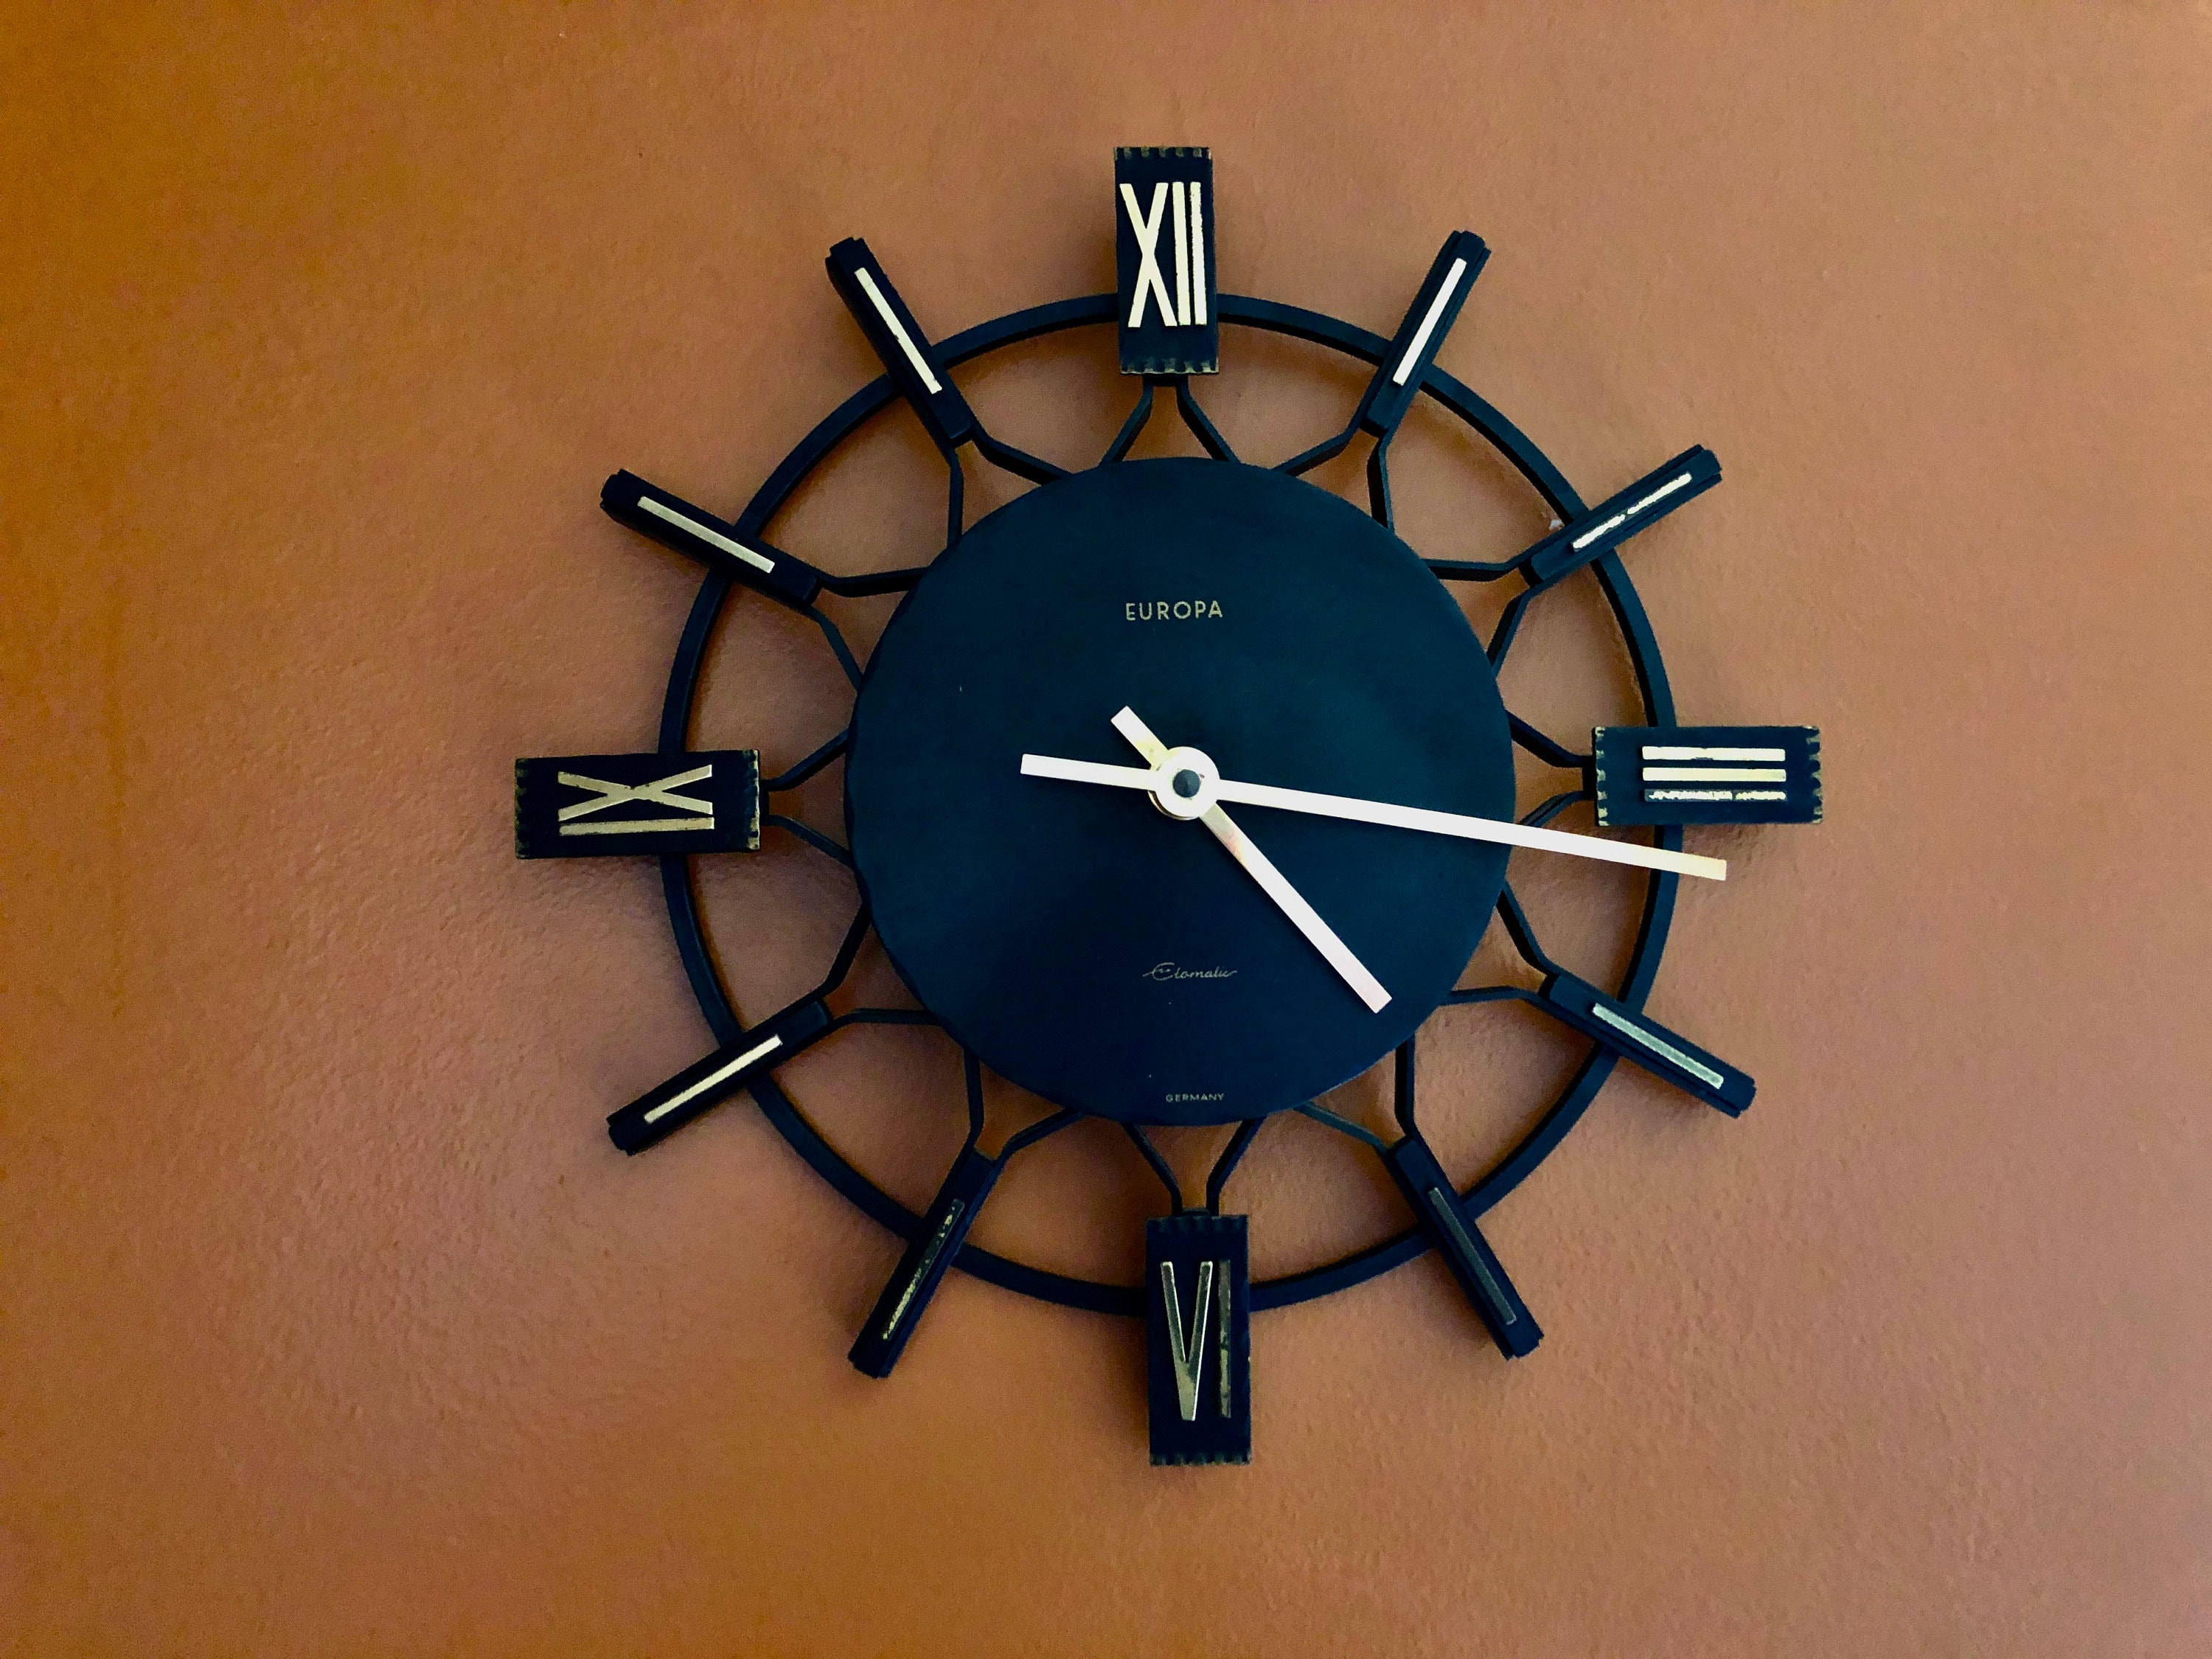 1960 Horloge Murale Europa, Horloge Fer Forgé Noir et Or, Accessoire Cuisine Midcentury, Décoration 